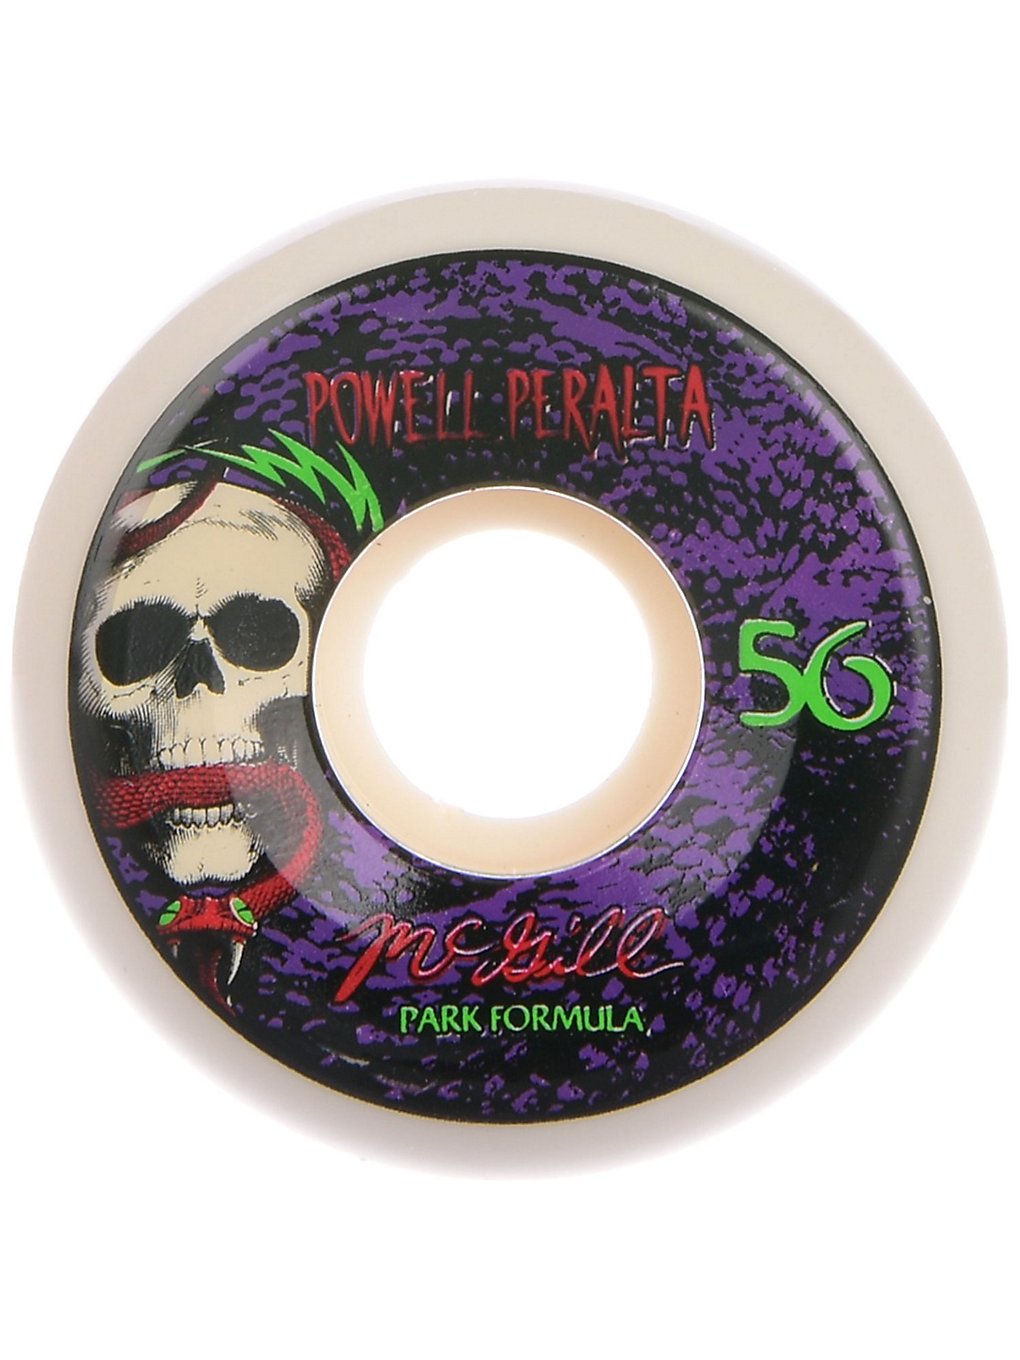 Powell Peralta Mc Gill Skull & Snake PF 56 Wheels white green